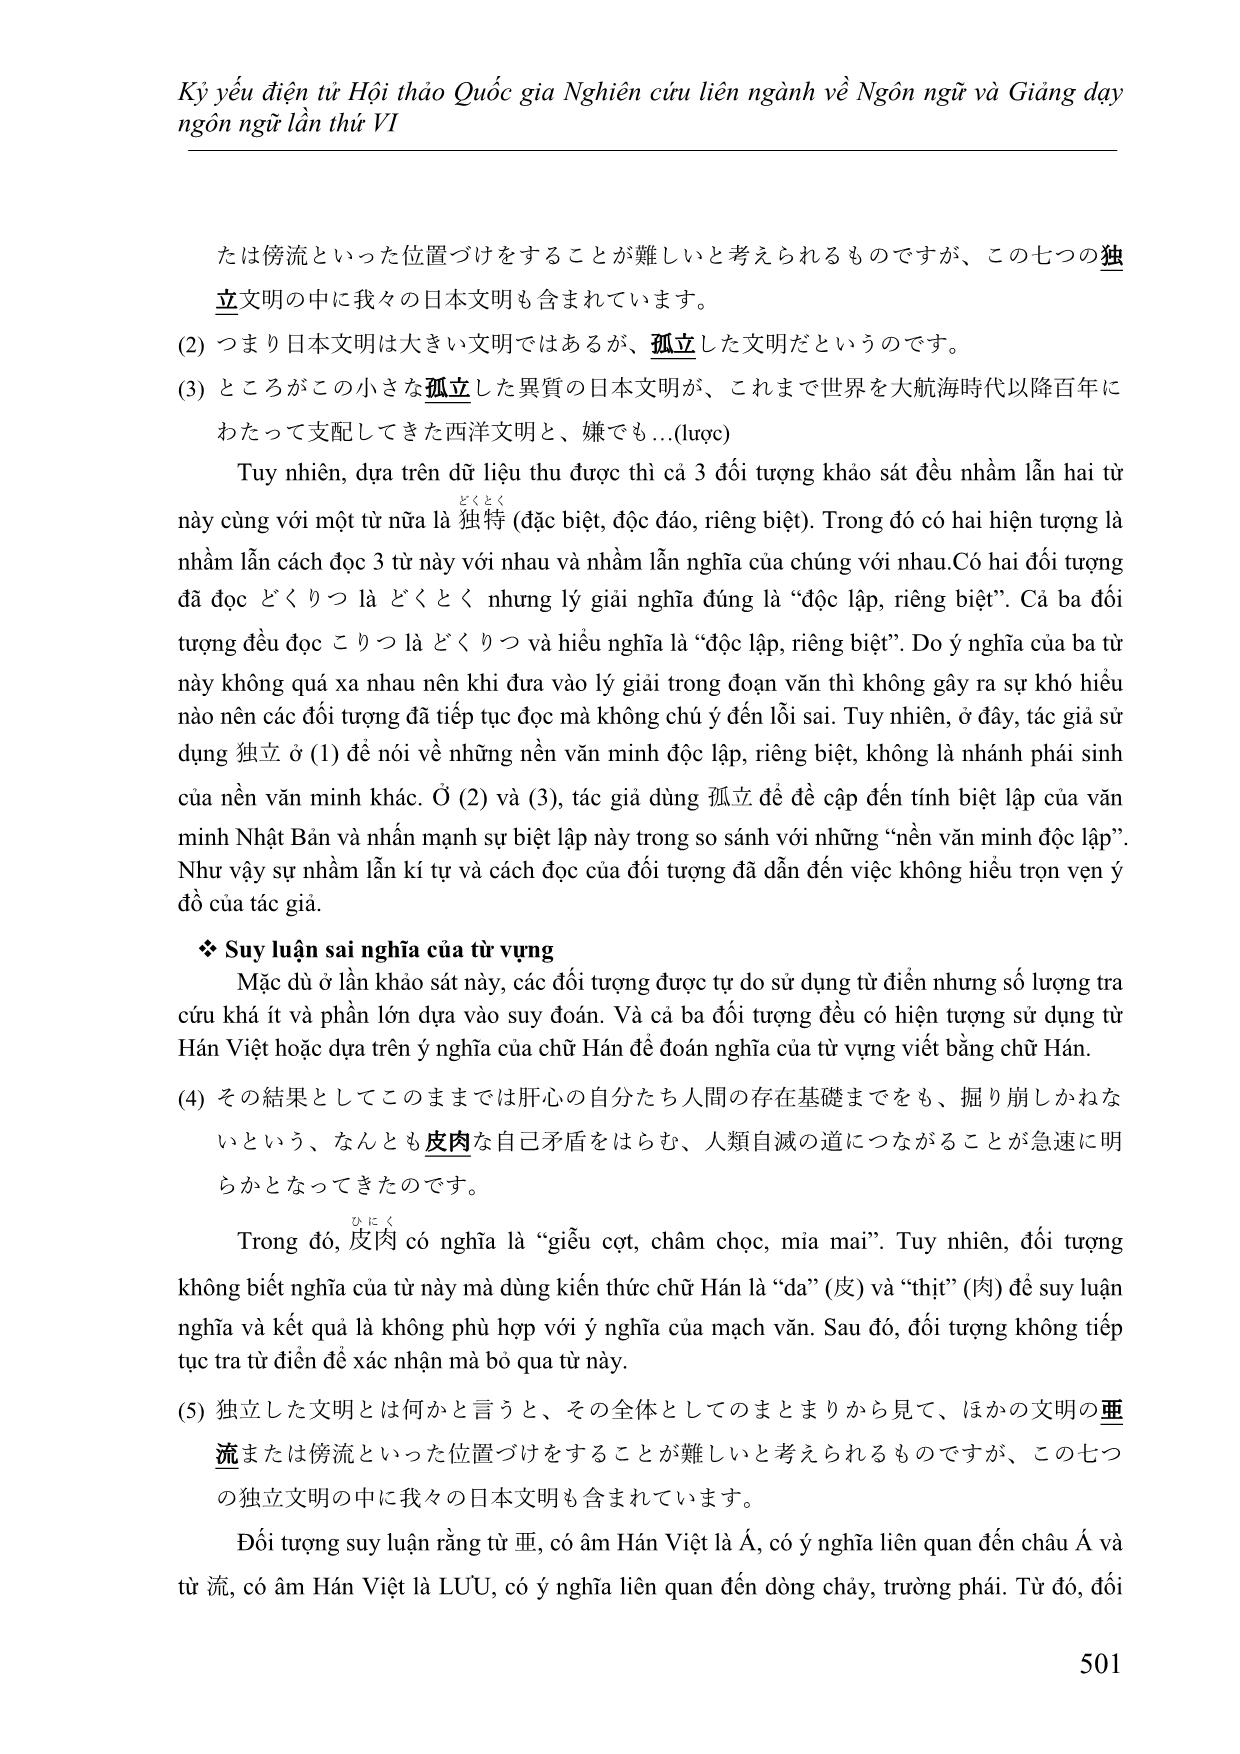 Nghiên cứu các lỗi thường gặp của người học Việt Nam ở trình độ cao cấp khi đọc hiểu văn bản tiếng Nhật trang 6